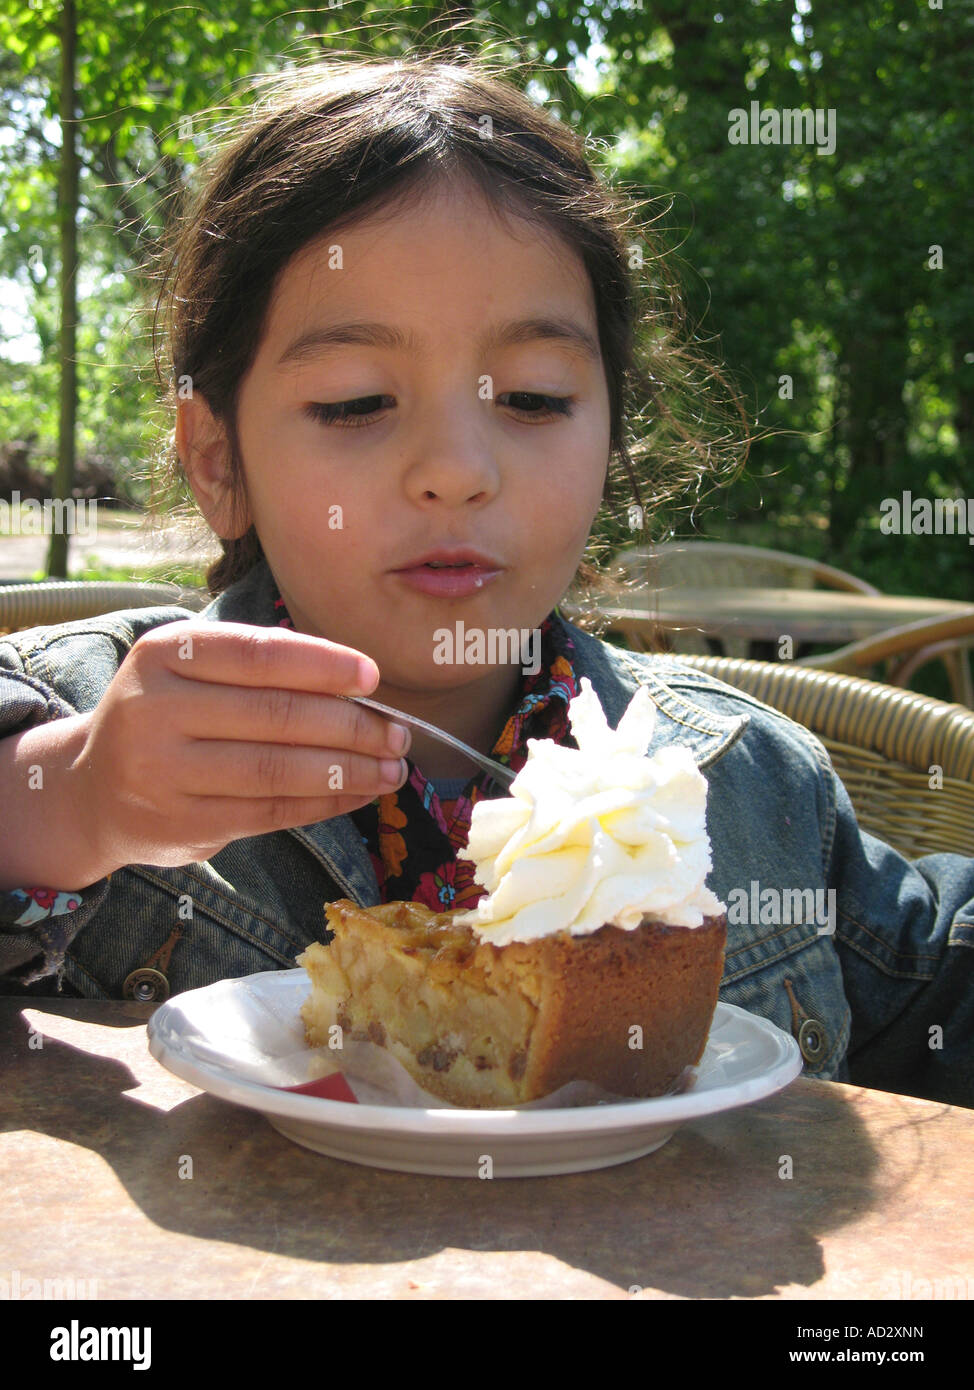 Little girl eating apple pie Stock Photo